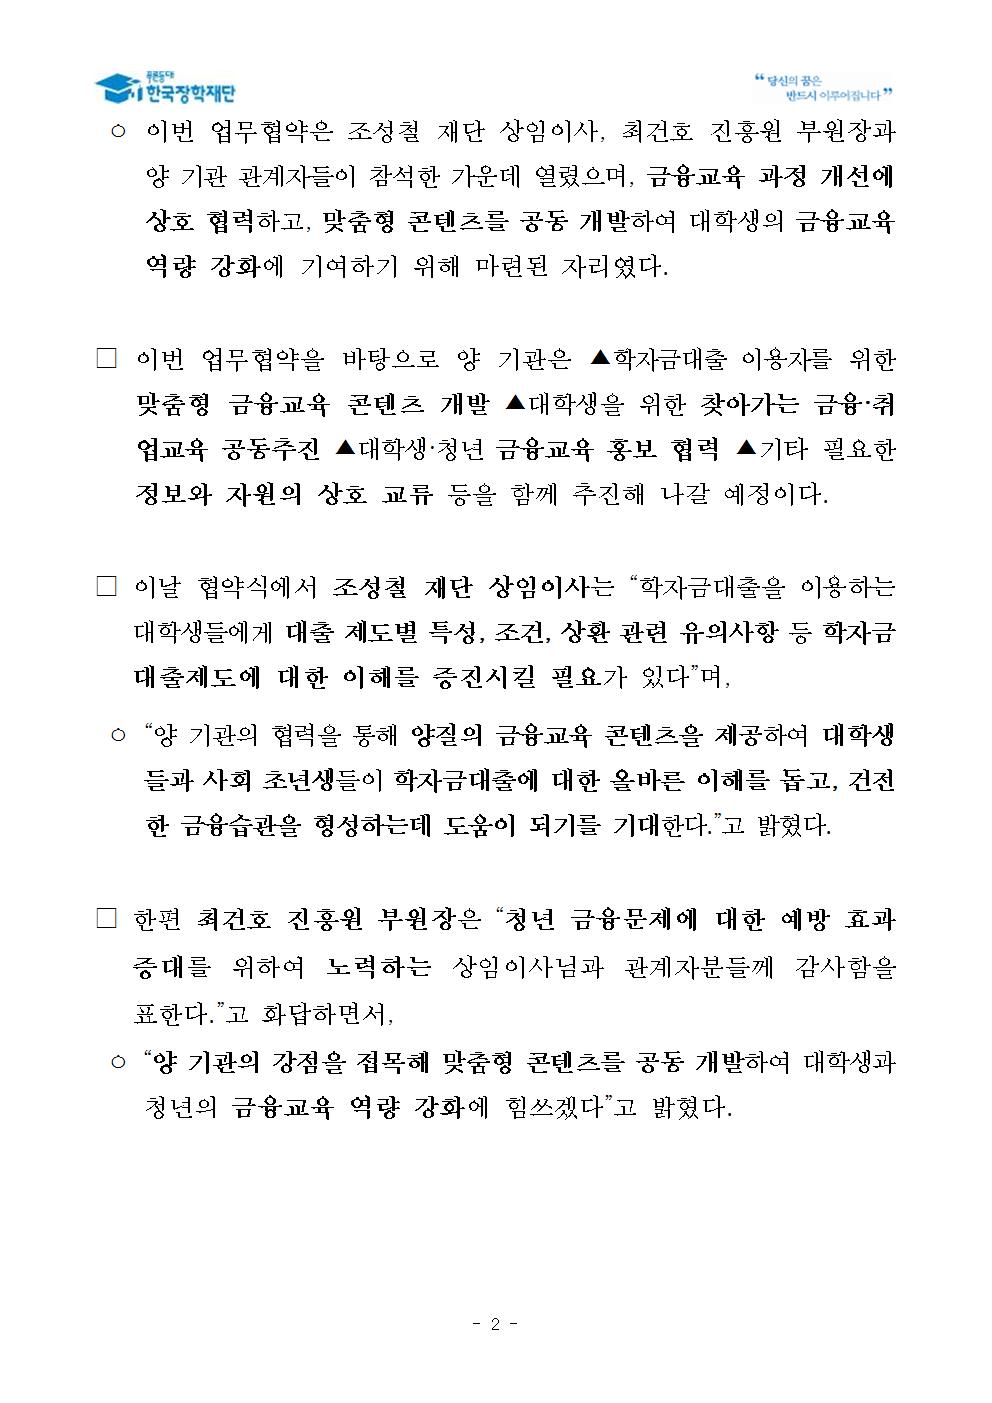 04-04(목)[보도자료] 한국장학재단 서민금융진흥원 MOU 체결002.jpg